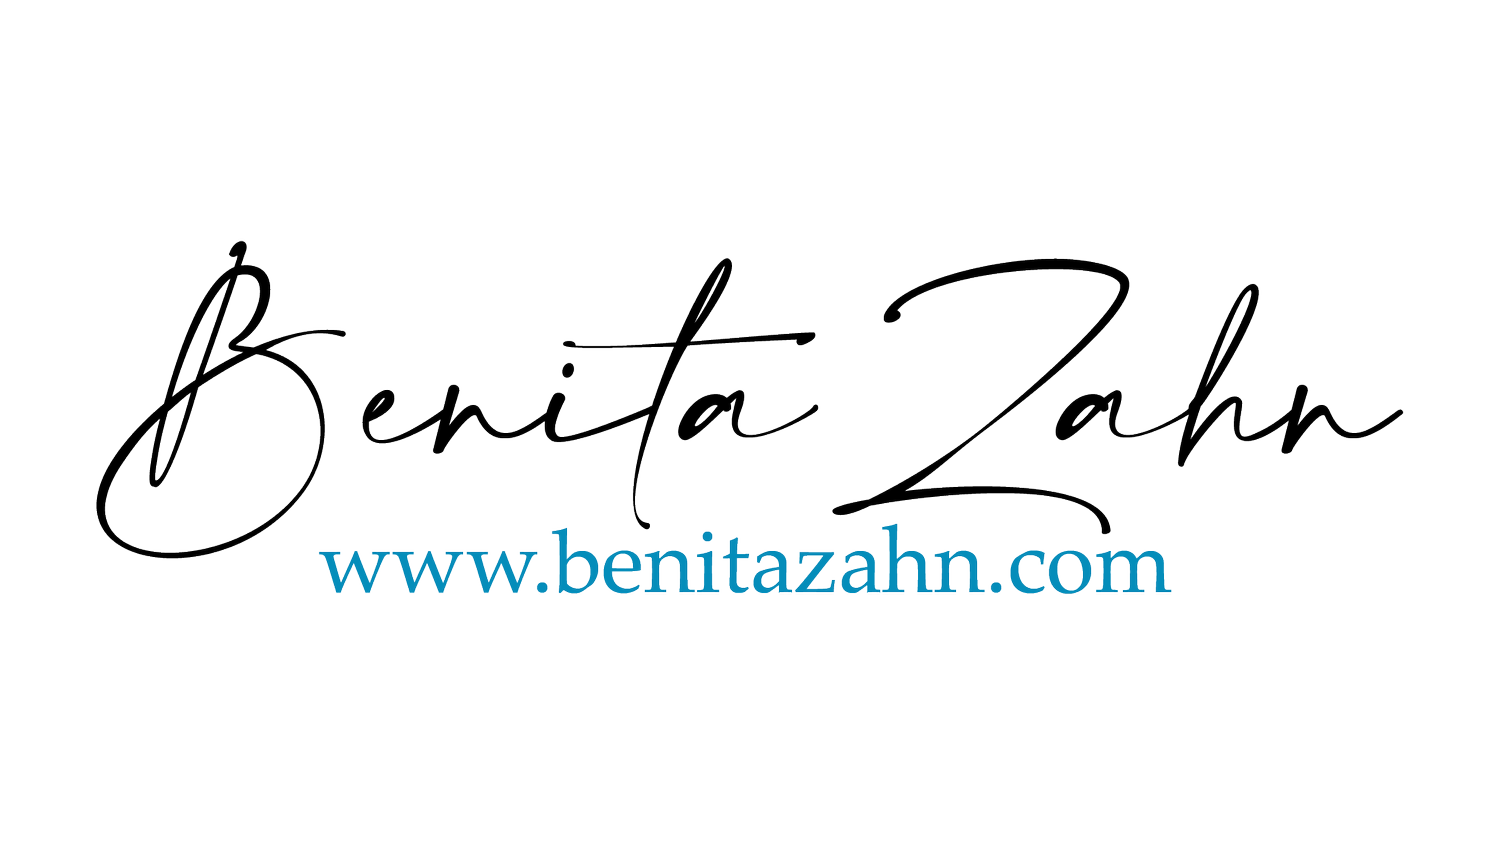 Benita Zahn | www.benitazahn.com